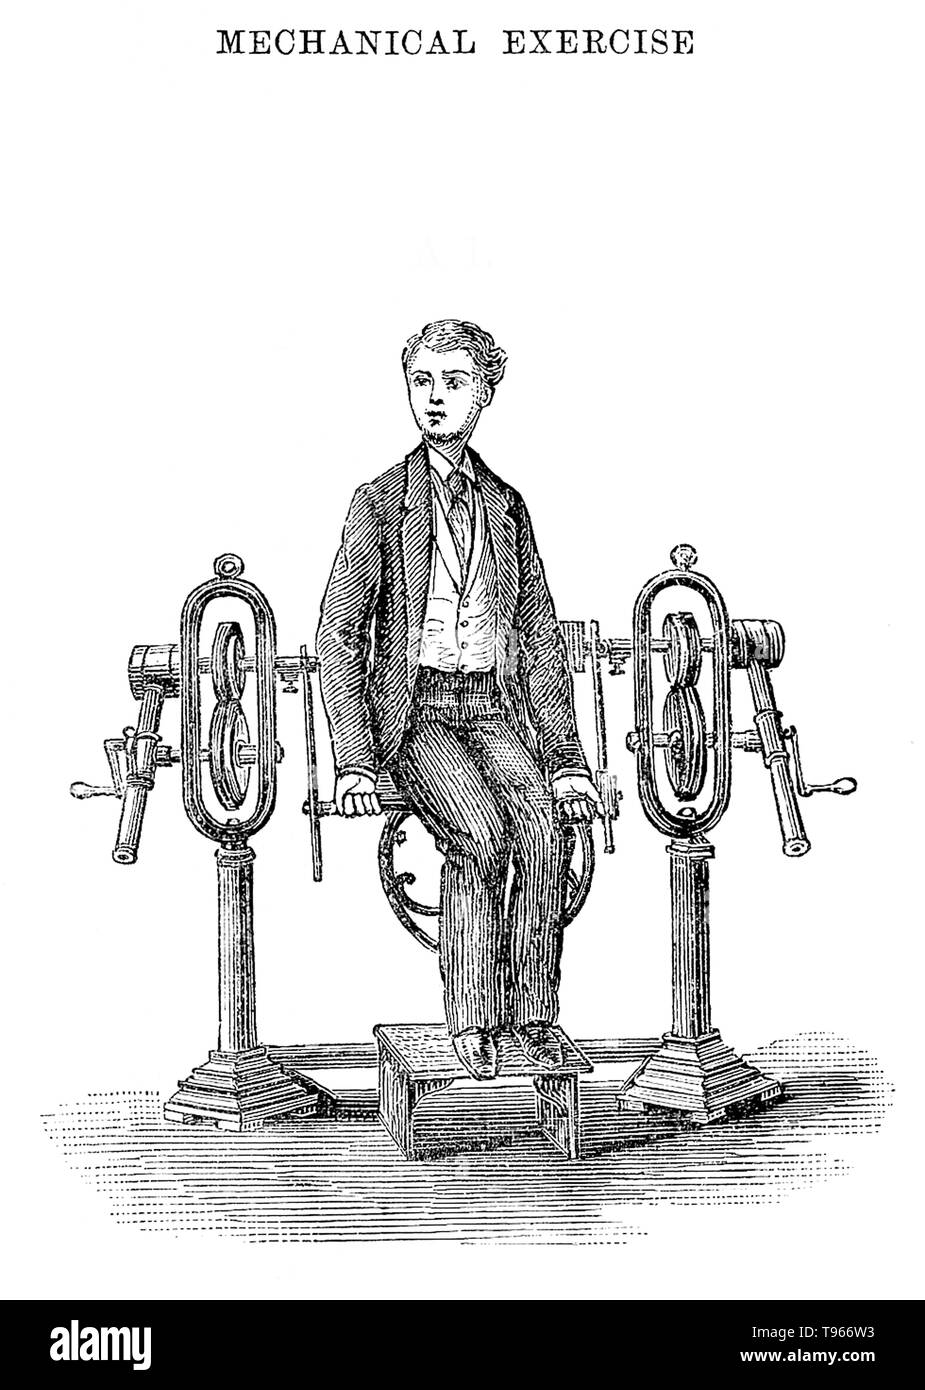 L'Institut Zander. Exercice mécanique, la flexion de l'avant-bras. 1883. Jonas Gustav Vilhelm Zander (Mars 29, 1835 - Juin 17, 1920) était un médecin orthopédiste suédois, et l'un des initiateurs de mécanothérapie. Il est connu pour l'invention d'une méthode thérapeutique d'exercice effectué à l'aide d'un appareil spécial. Il a commencé son travail en 1860. Il a fondé l'Institut thérapeutique Zander à Stockholm. Banque D'Images